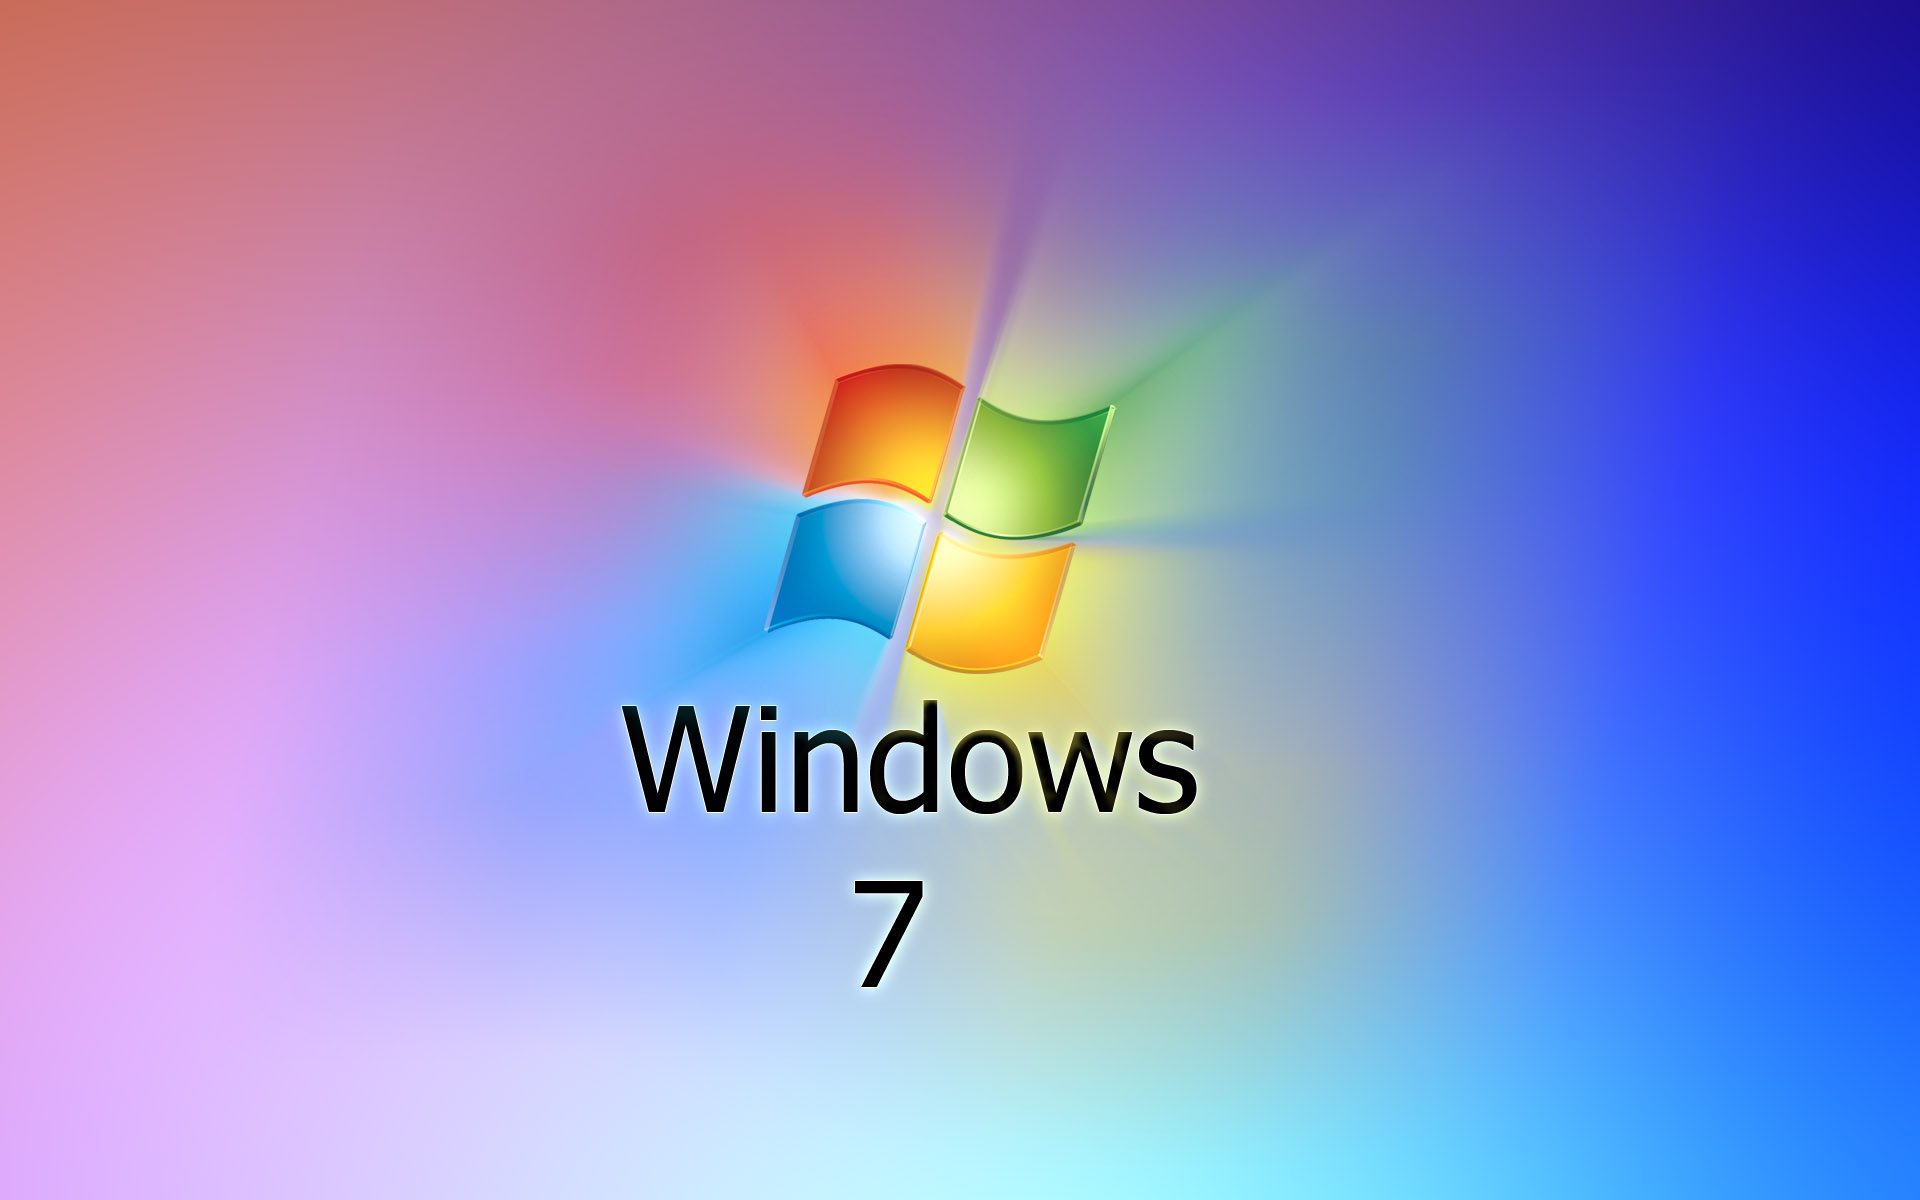 Модель windows 7. Виндовс 7. Операционная система Windows 7. Заставка виндовс. Изображение виндовс 7.